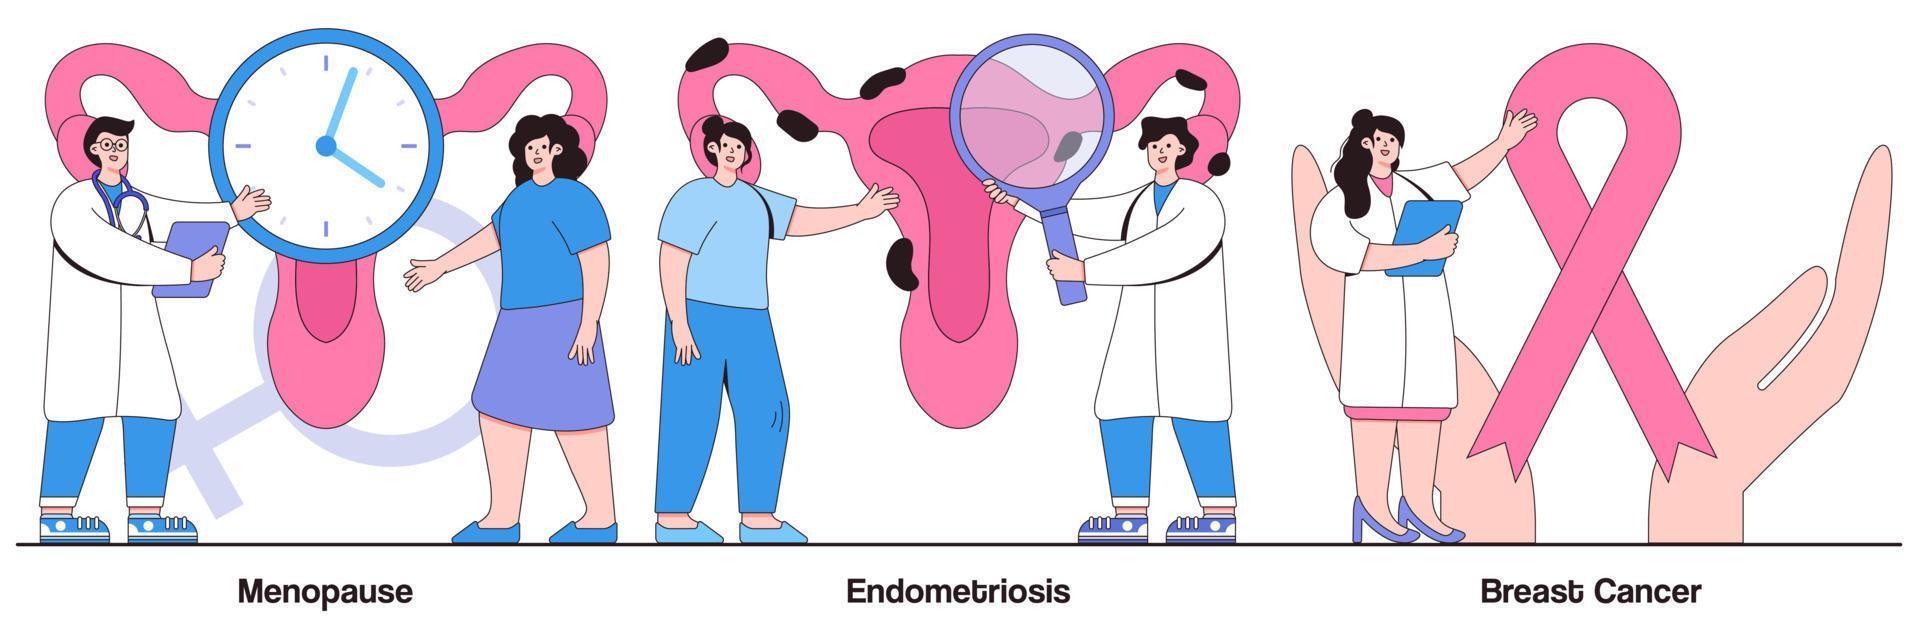 paquete ilustrado de menopausia, endometriosis y cáncer de mama vector